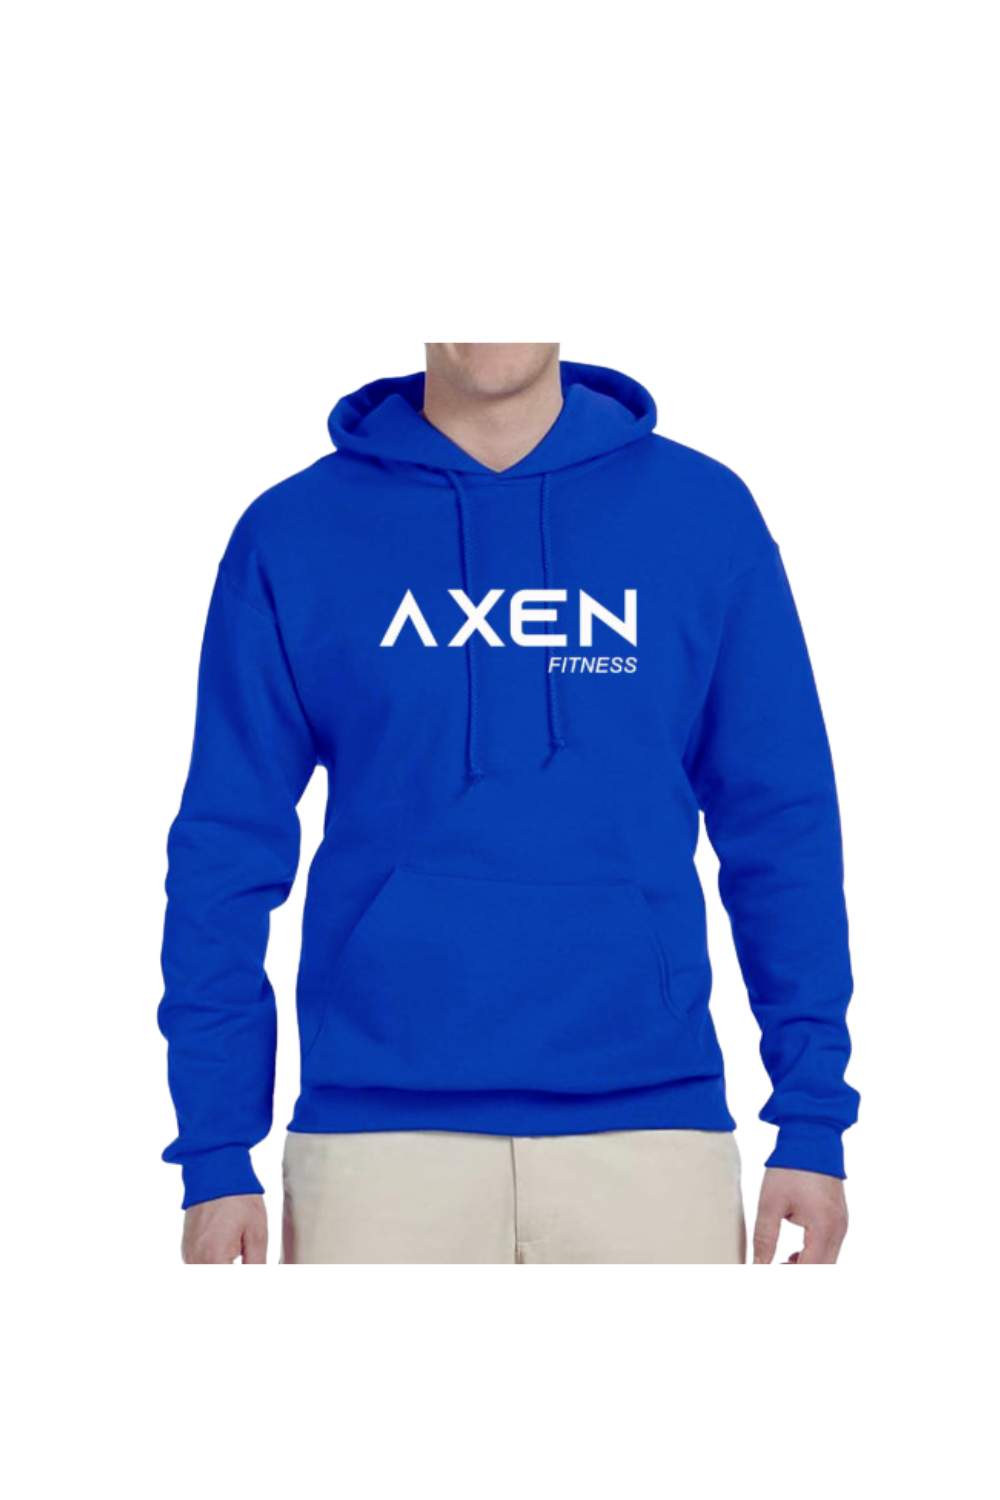 Classic Axen Pullover